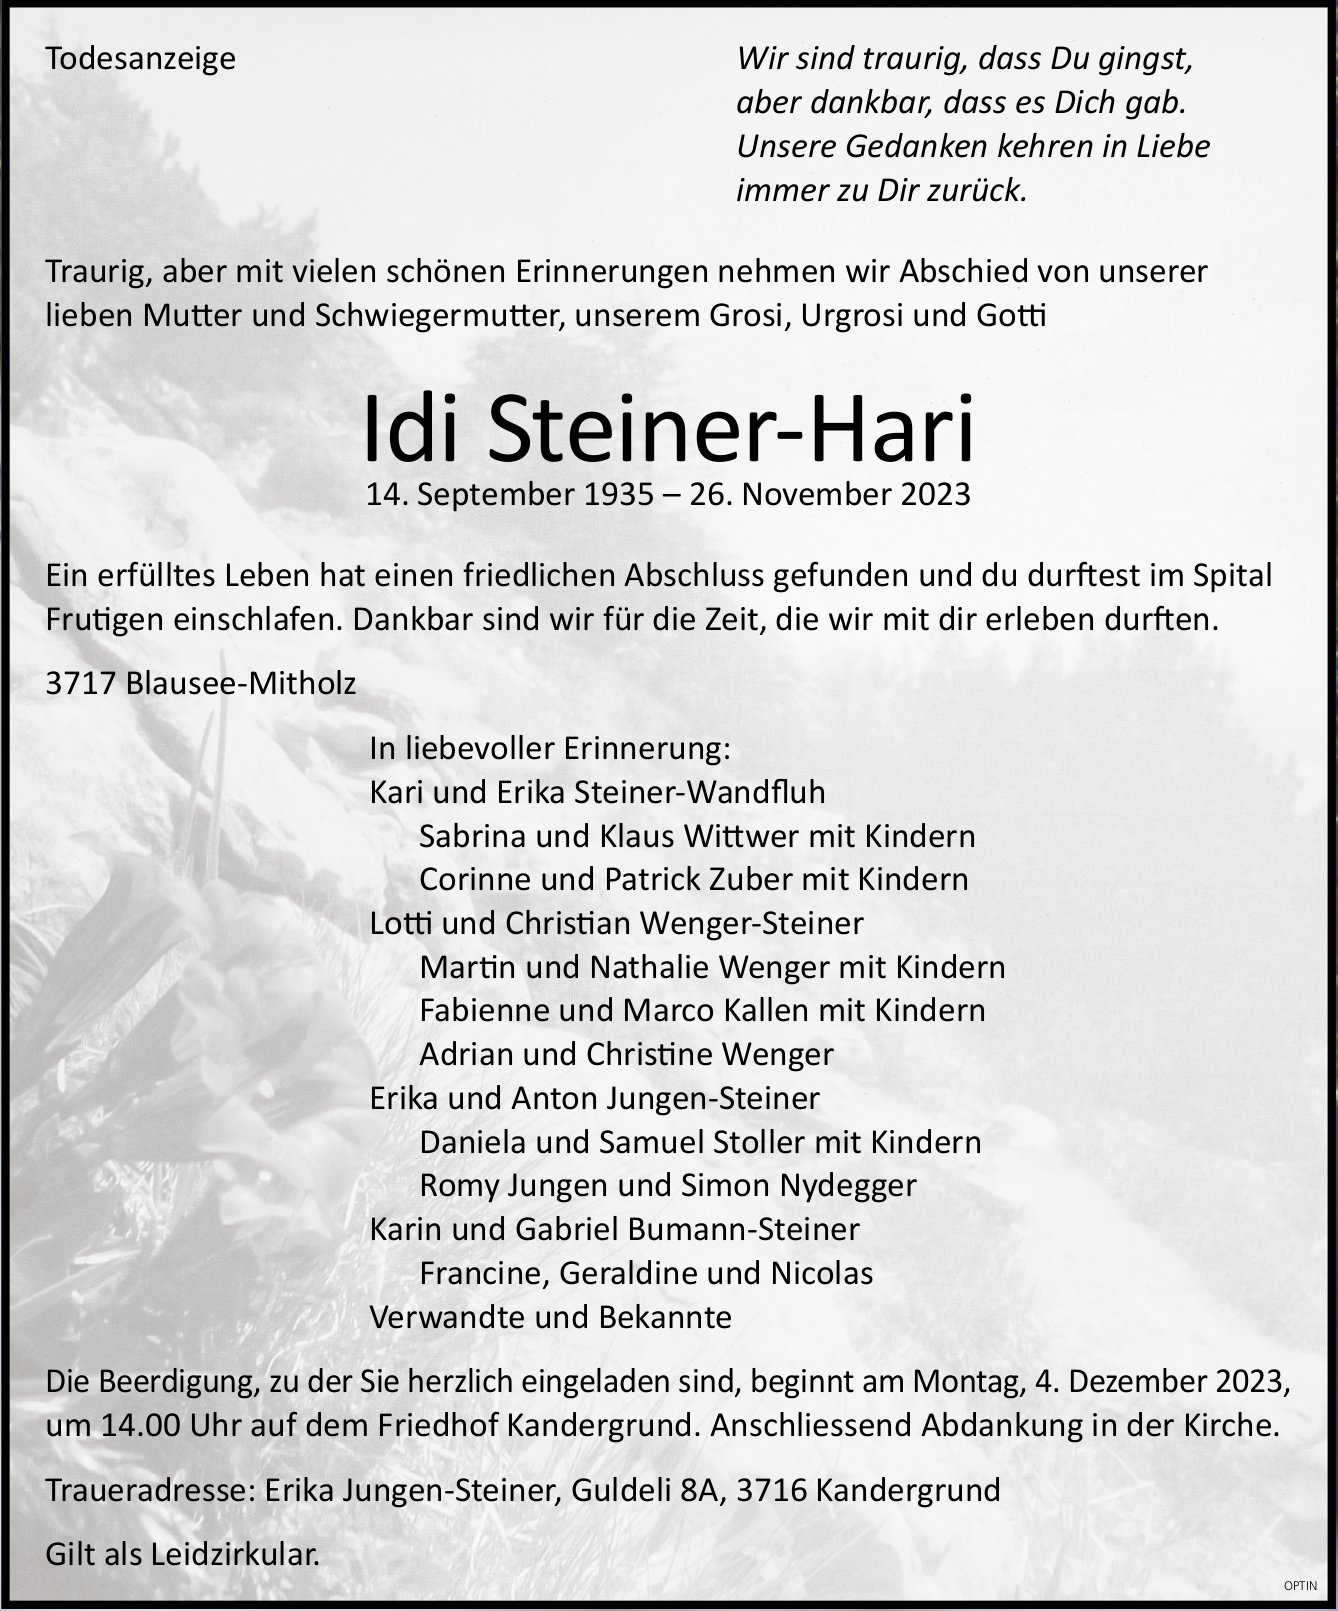 Idi Steiner-Hari, November 2023 / TA